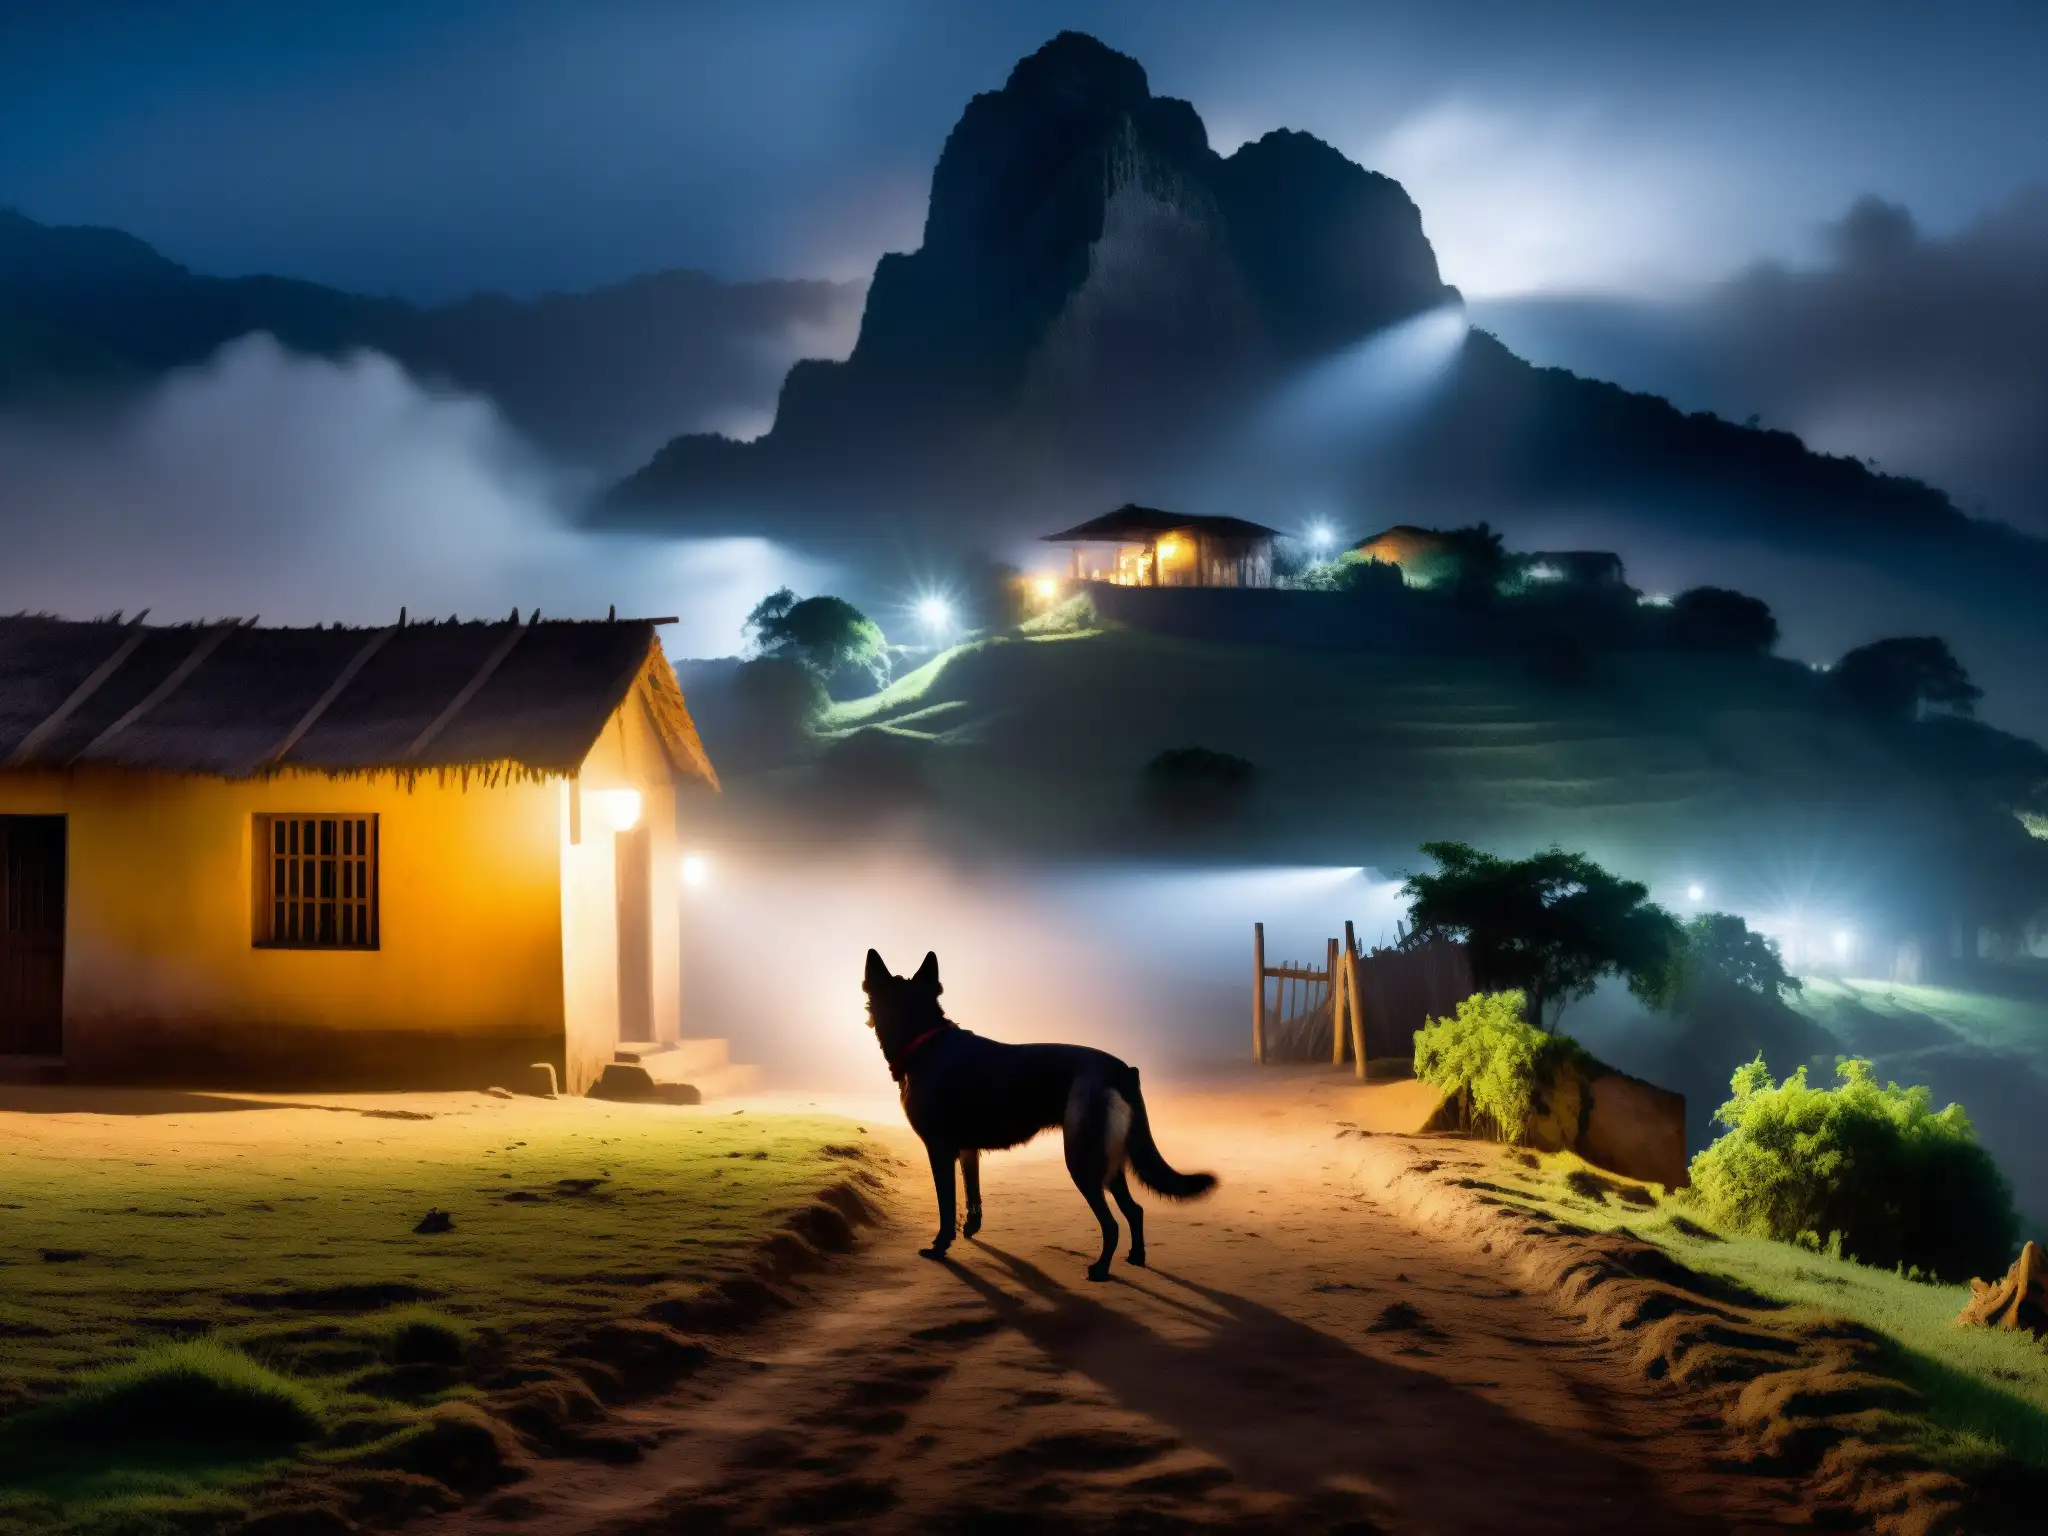 Apariciones nocturnas: misterioso perro negro emerge de la niebla en un pueblo de América del Sur, evocando atmósfera sobrenatural